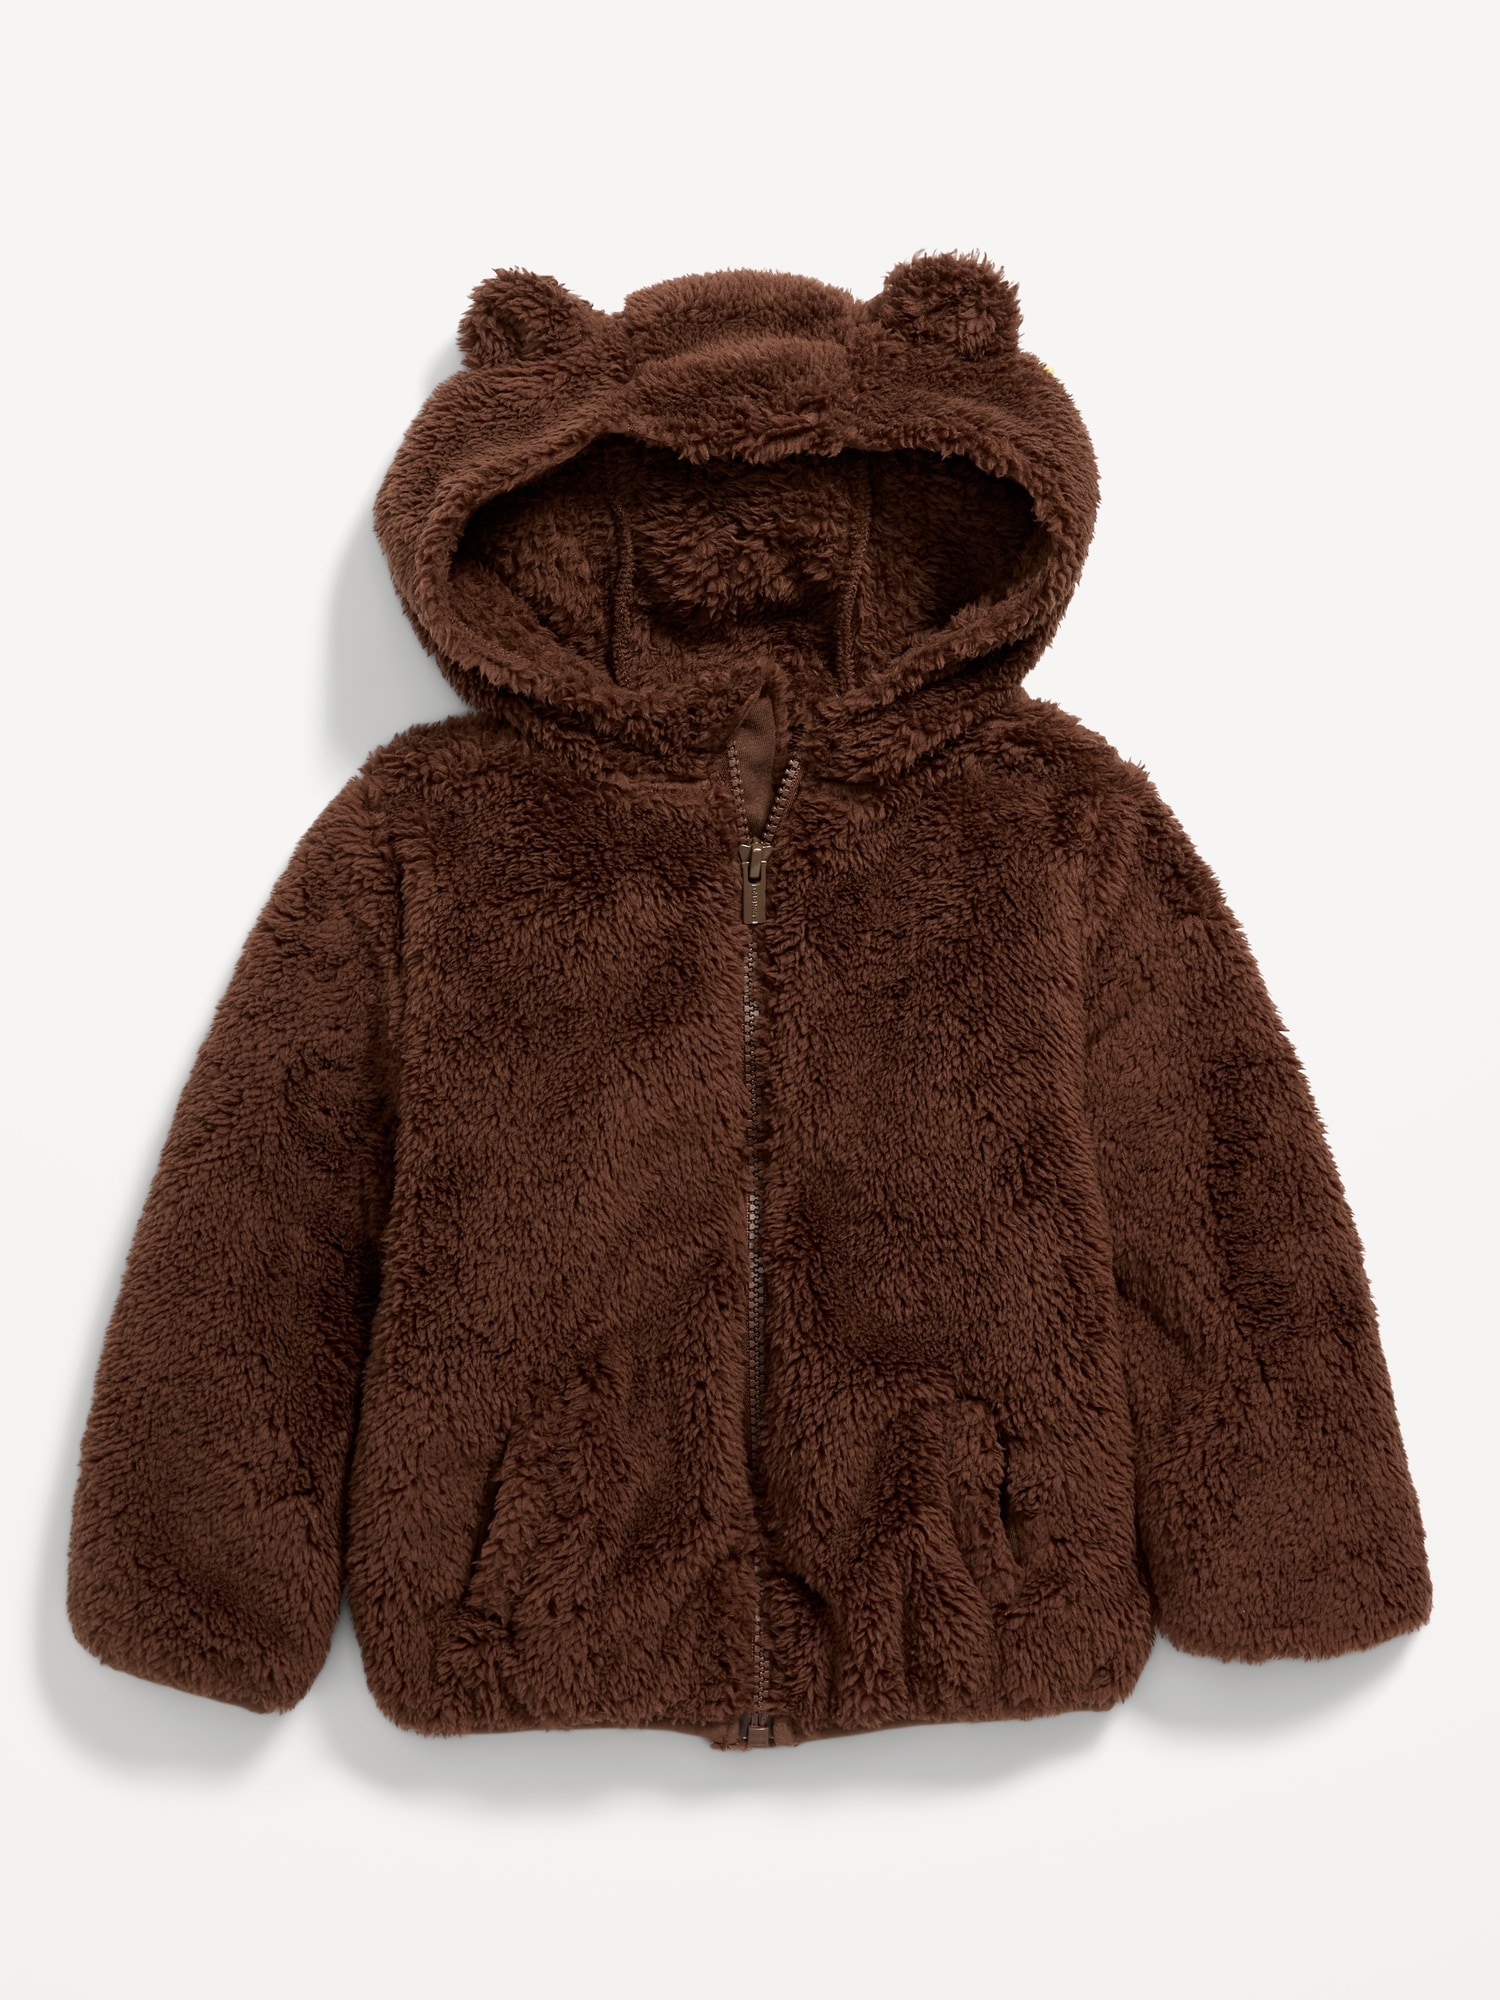 Toddler Sherpa Bear Jacket